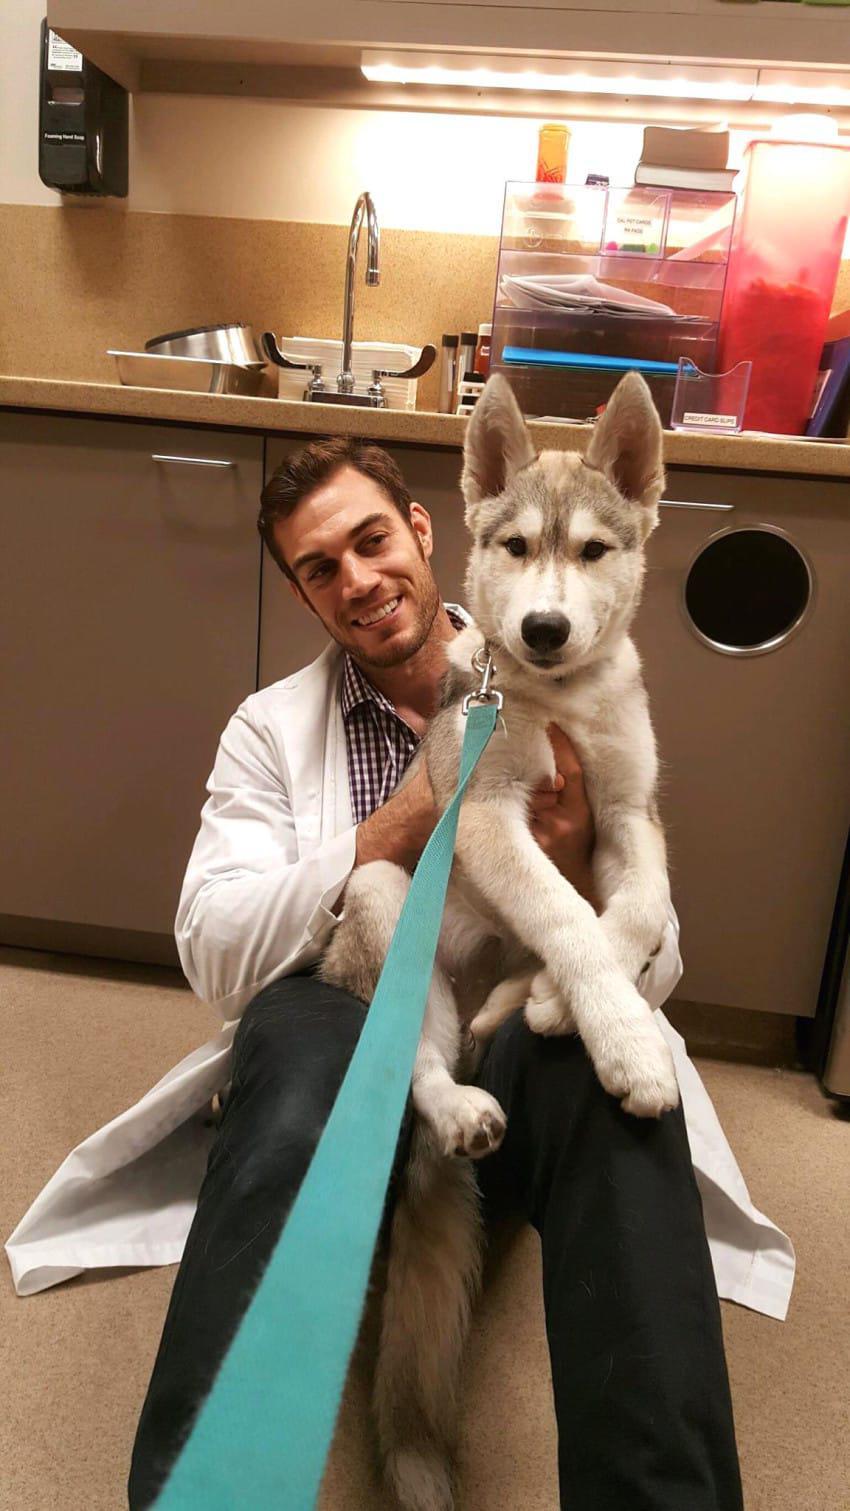 Αυτός ο κτηνίατρος είναι τόσο κούκλος που θα σας κάνει να πάτε τα ζωάκια σας κατευθείαν για εξέταση